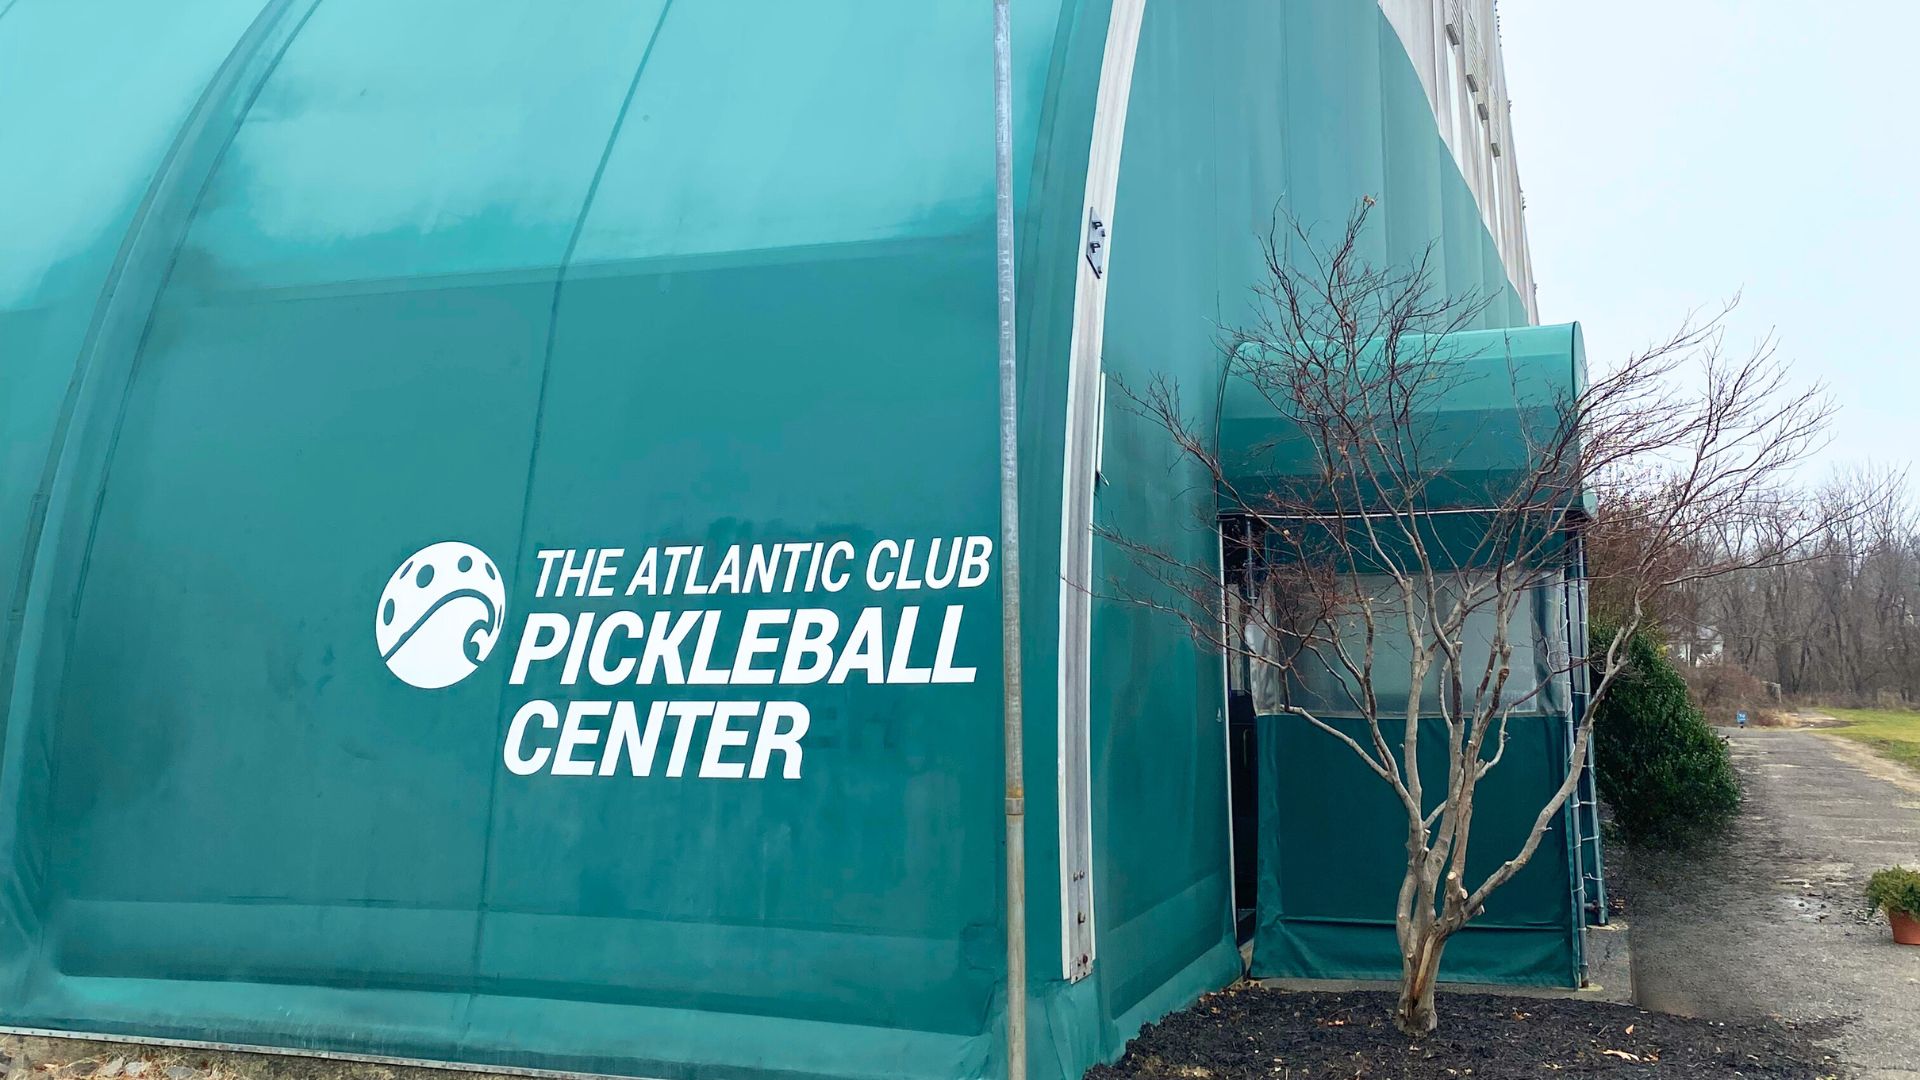 The Pickleball Center